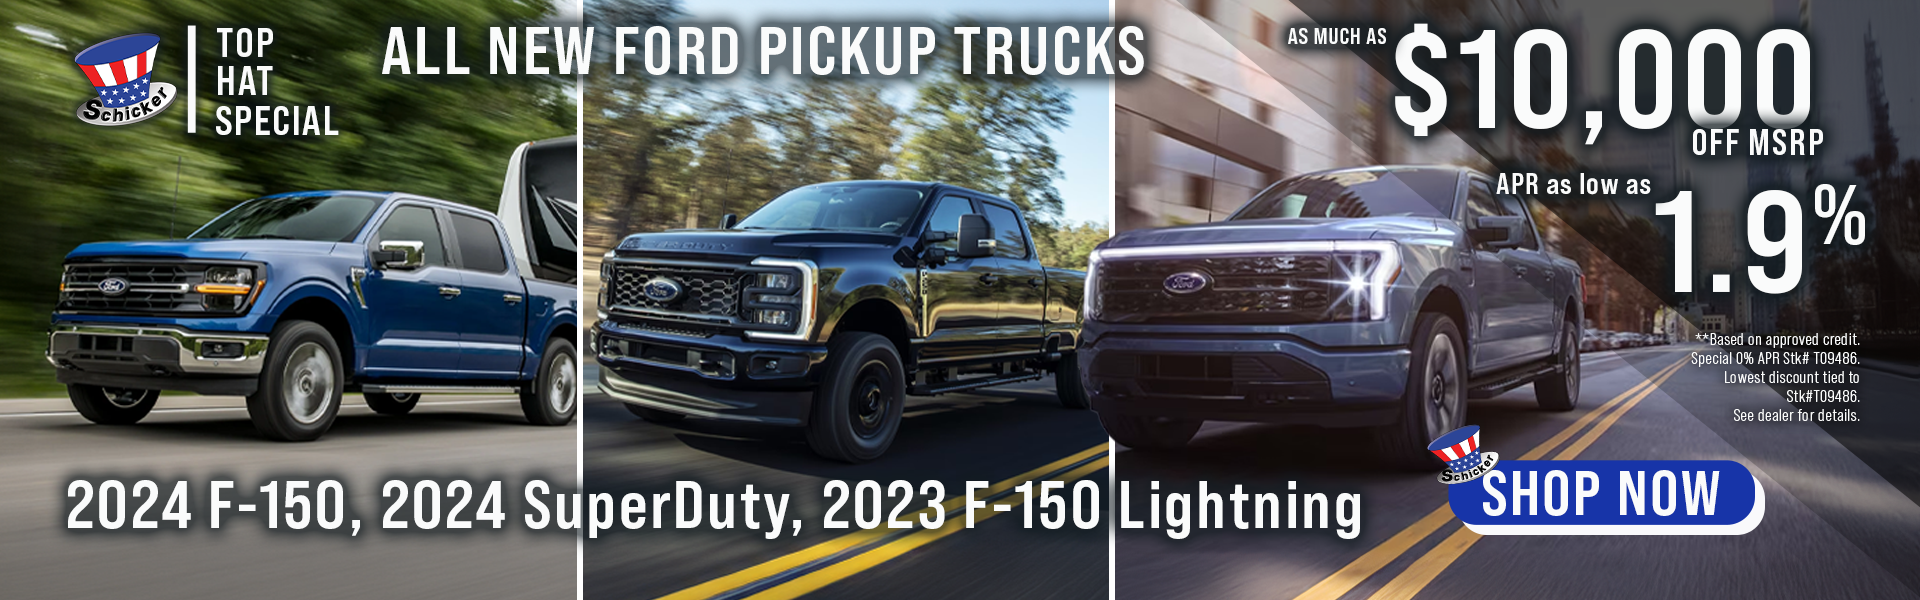 All New Ford Pickup Trucks